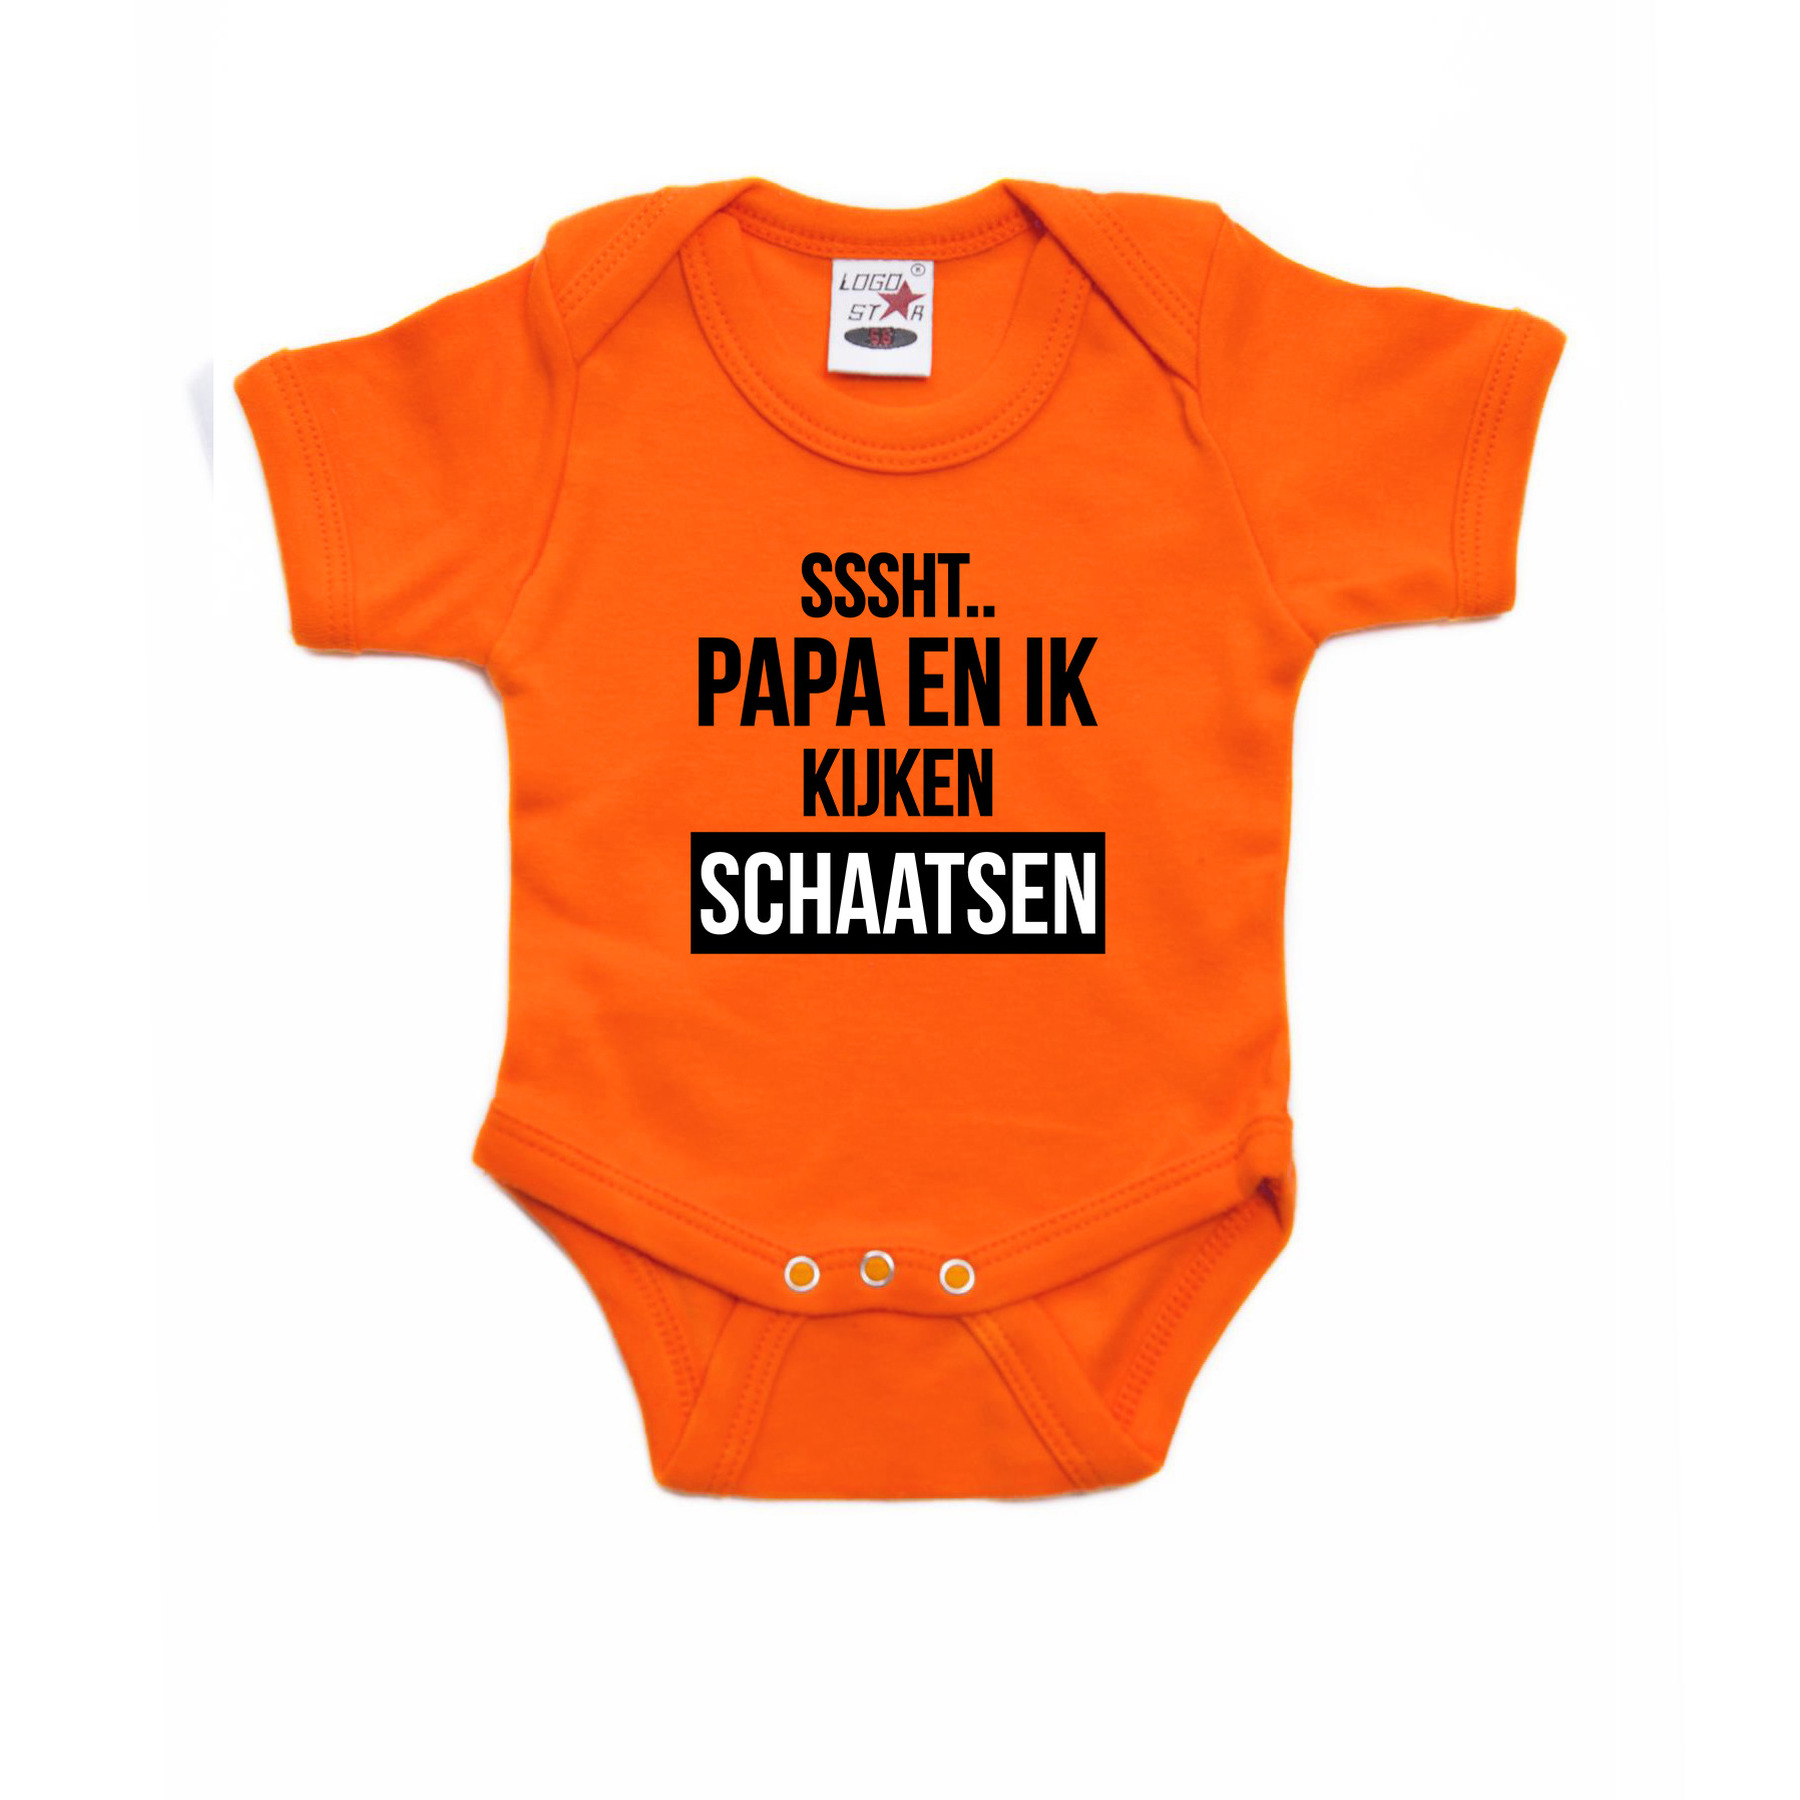 Sssht kijken schaatsen baby rompertje oranje Holland / Nederland / EK / WK supporter 68 (4-6 maanden) -